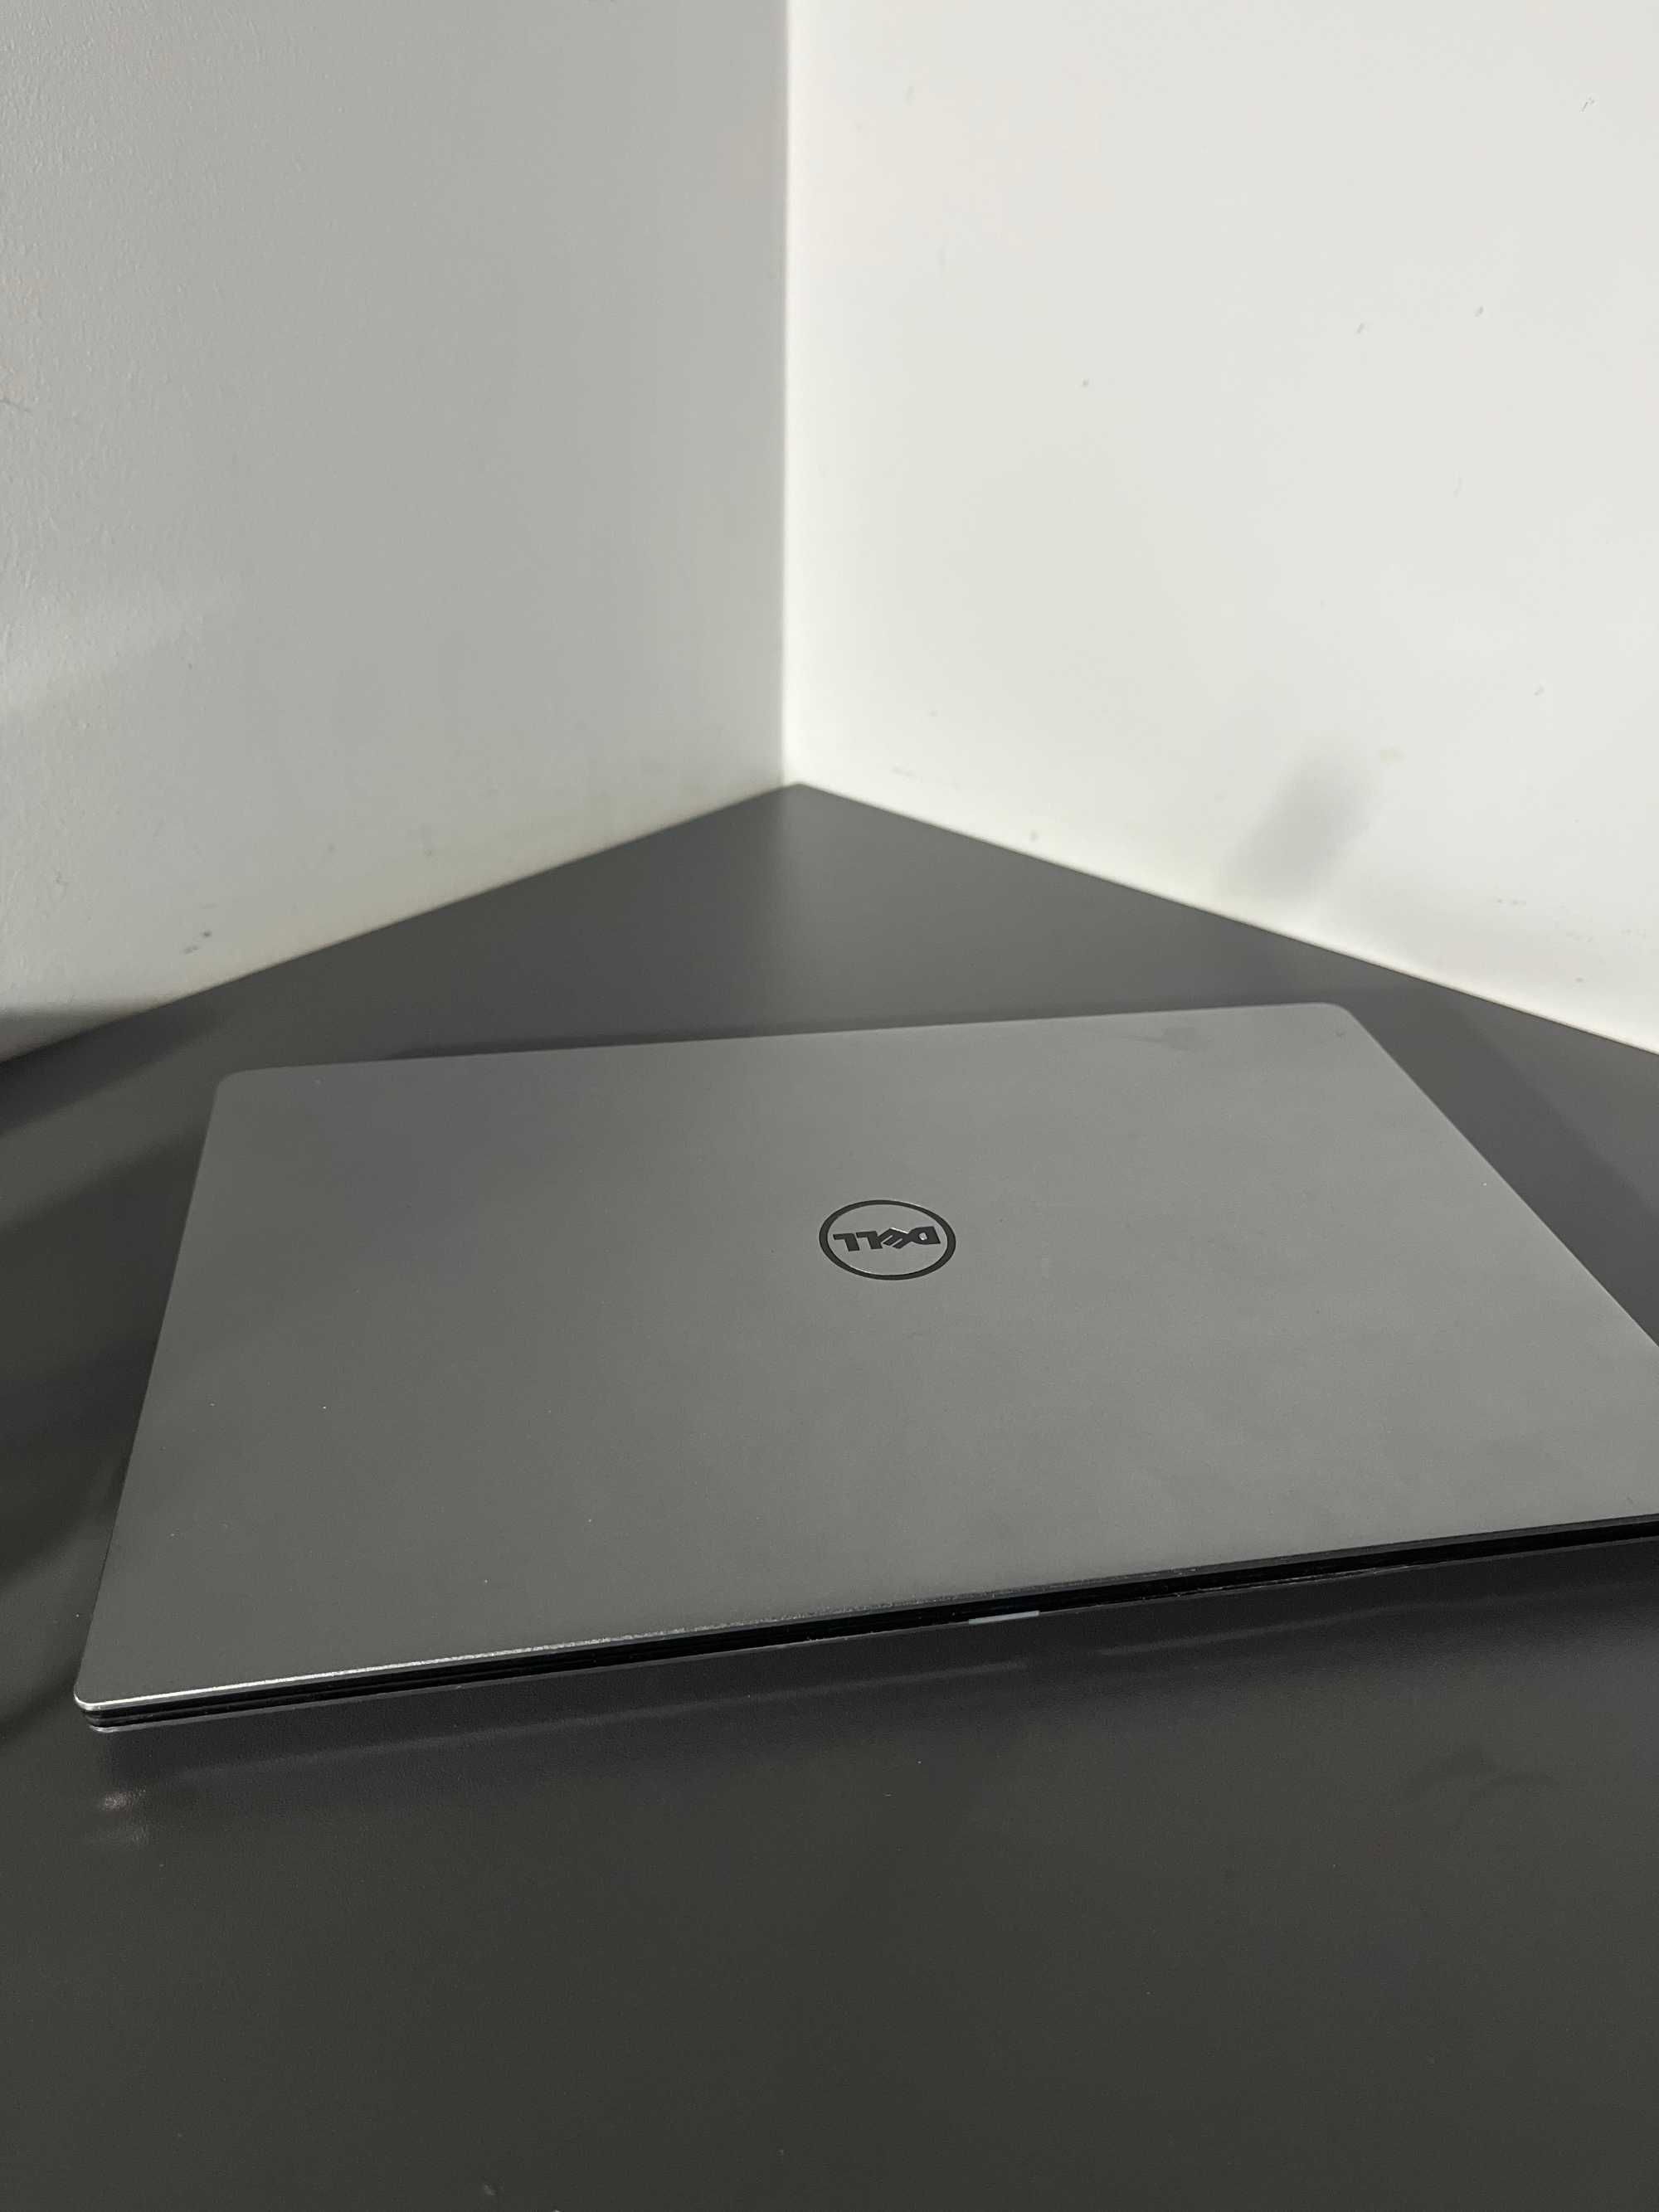 Laptop Dell XPS 9350 - i7 - 16GB RAM - M.2 SSD - DOTYKOWY EKRAN